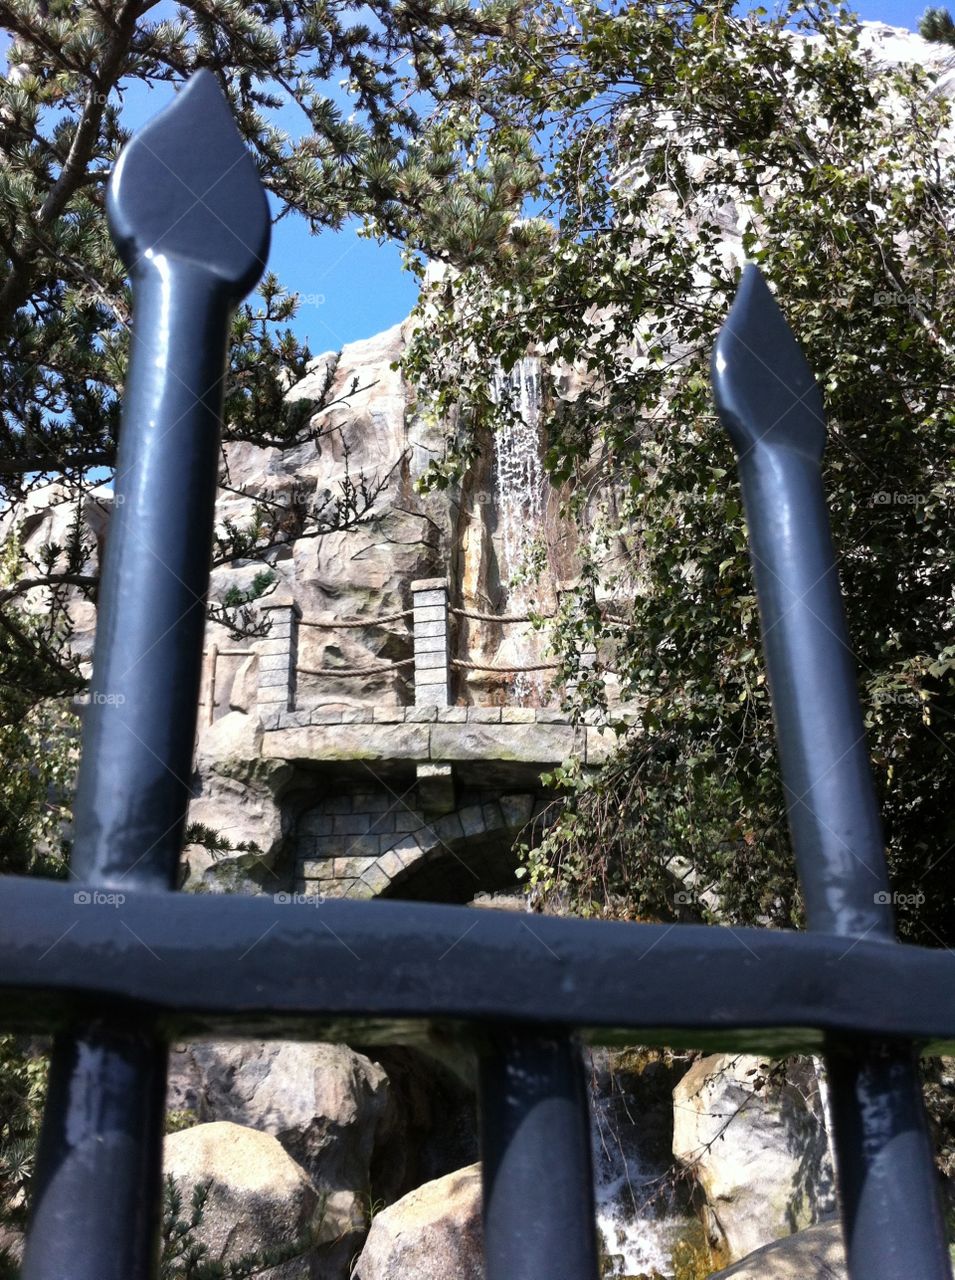 The Matterhorn in Disneyland. Taken outside the Matterhorn ride in Disneyland in Southern California. 